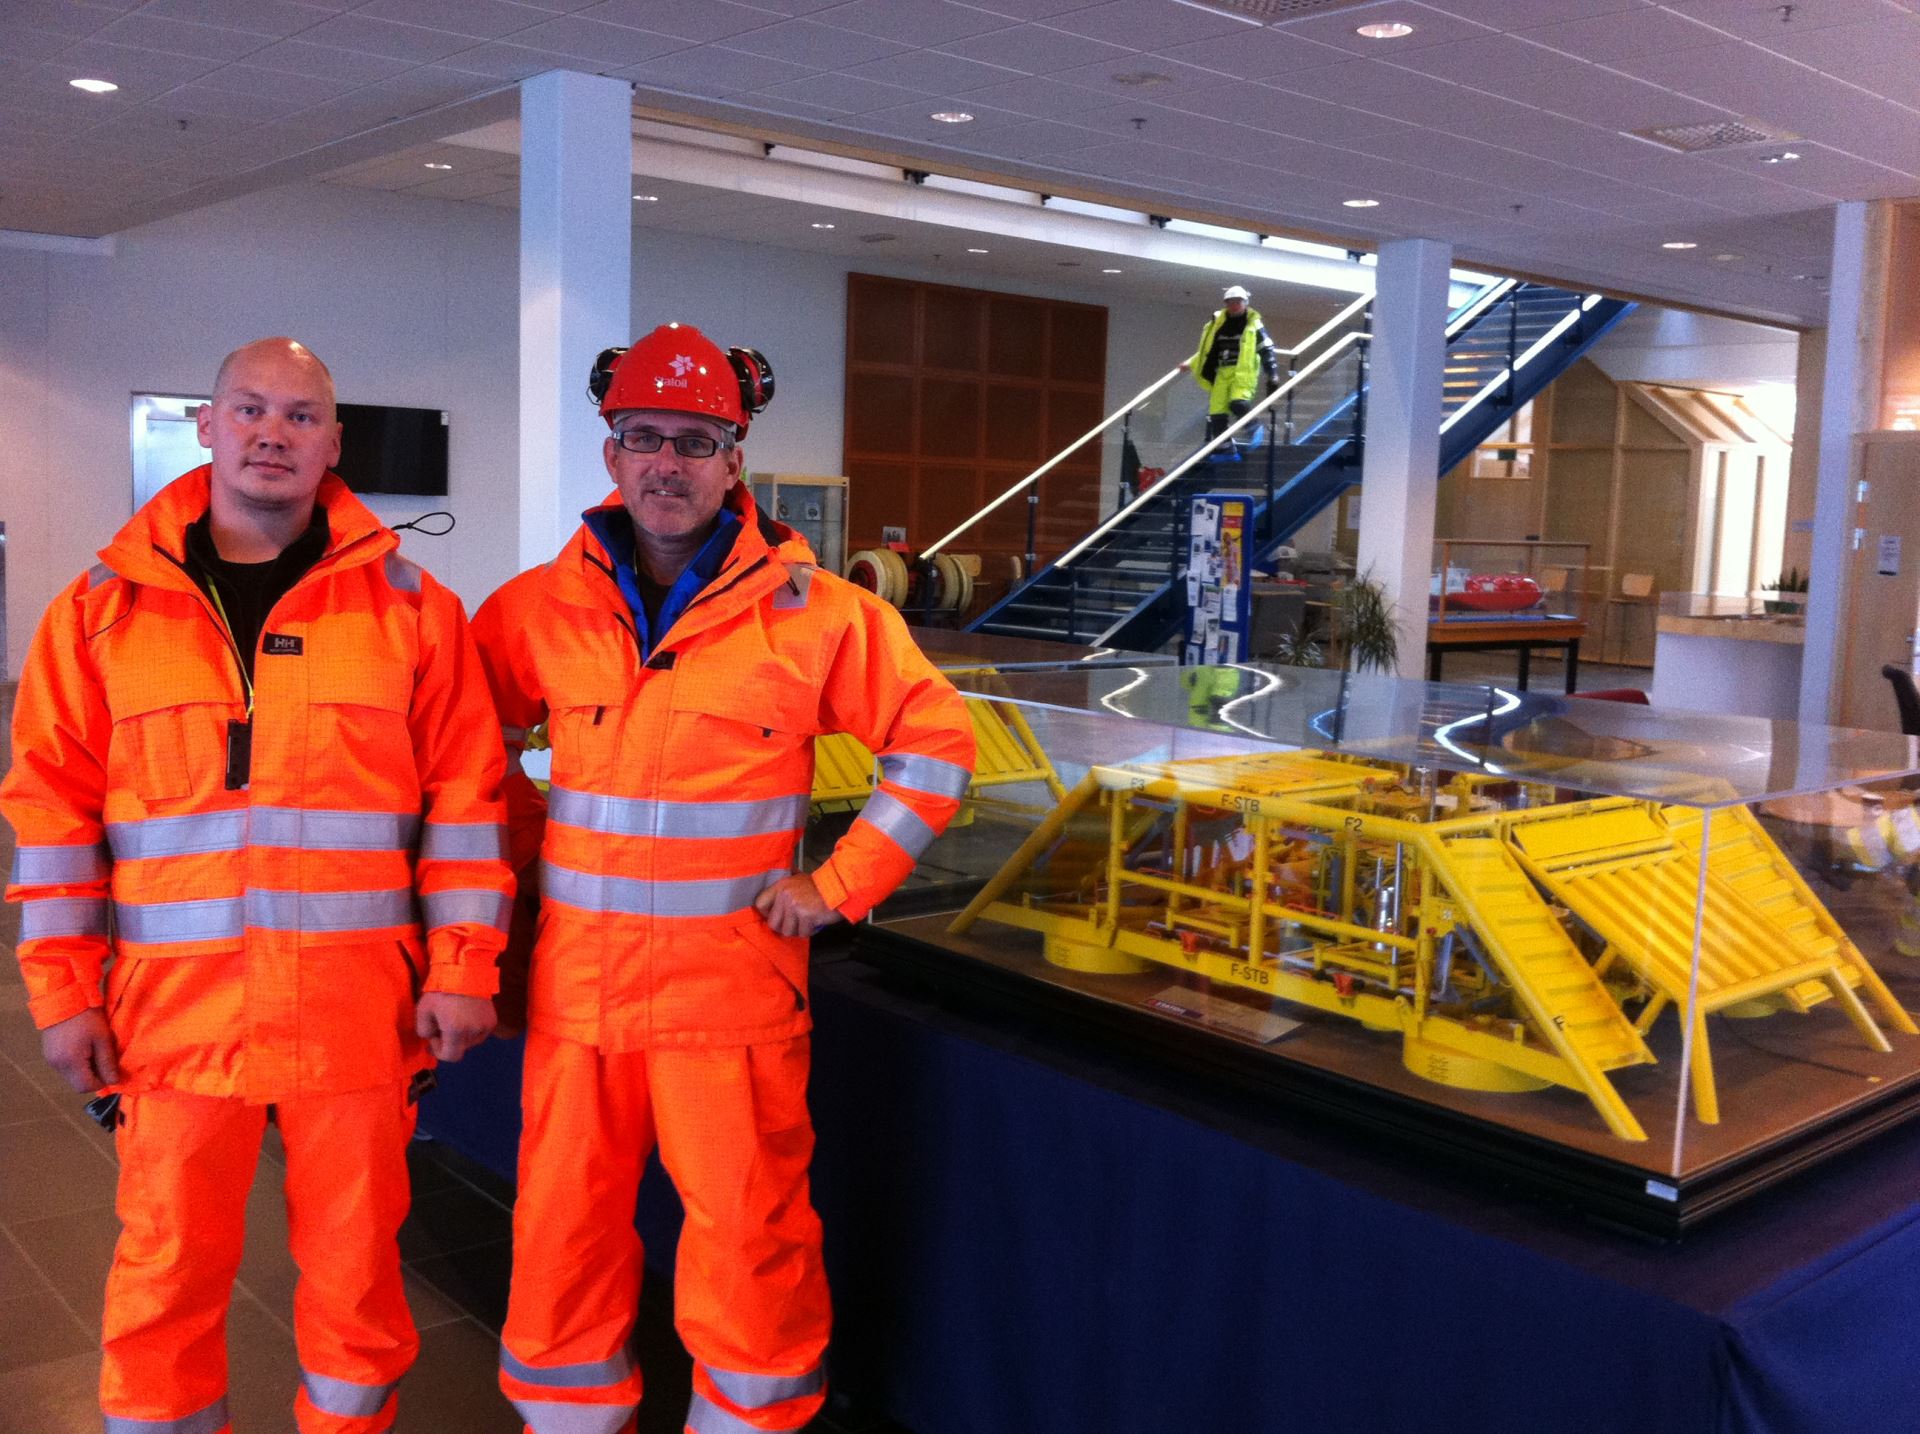 Teknolog Roar Vigre og produksjonsleder ved ØB Hammerfest, Jim Ronny Hansen, i synlighetstøy ved en modell av et subsea-anlegg